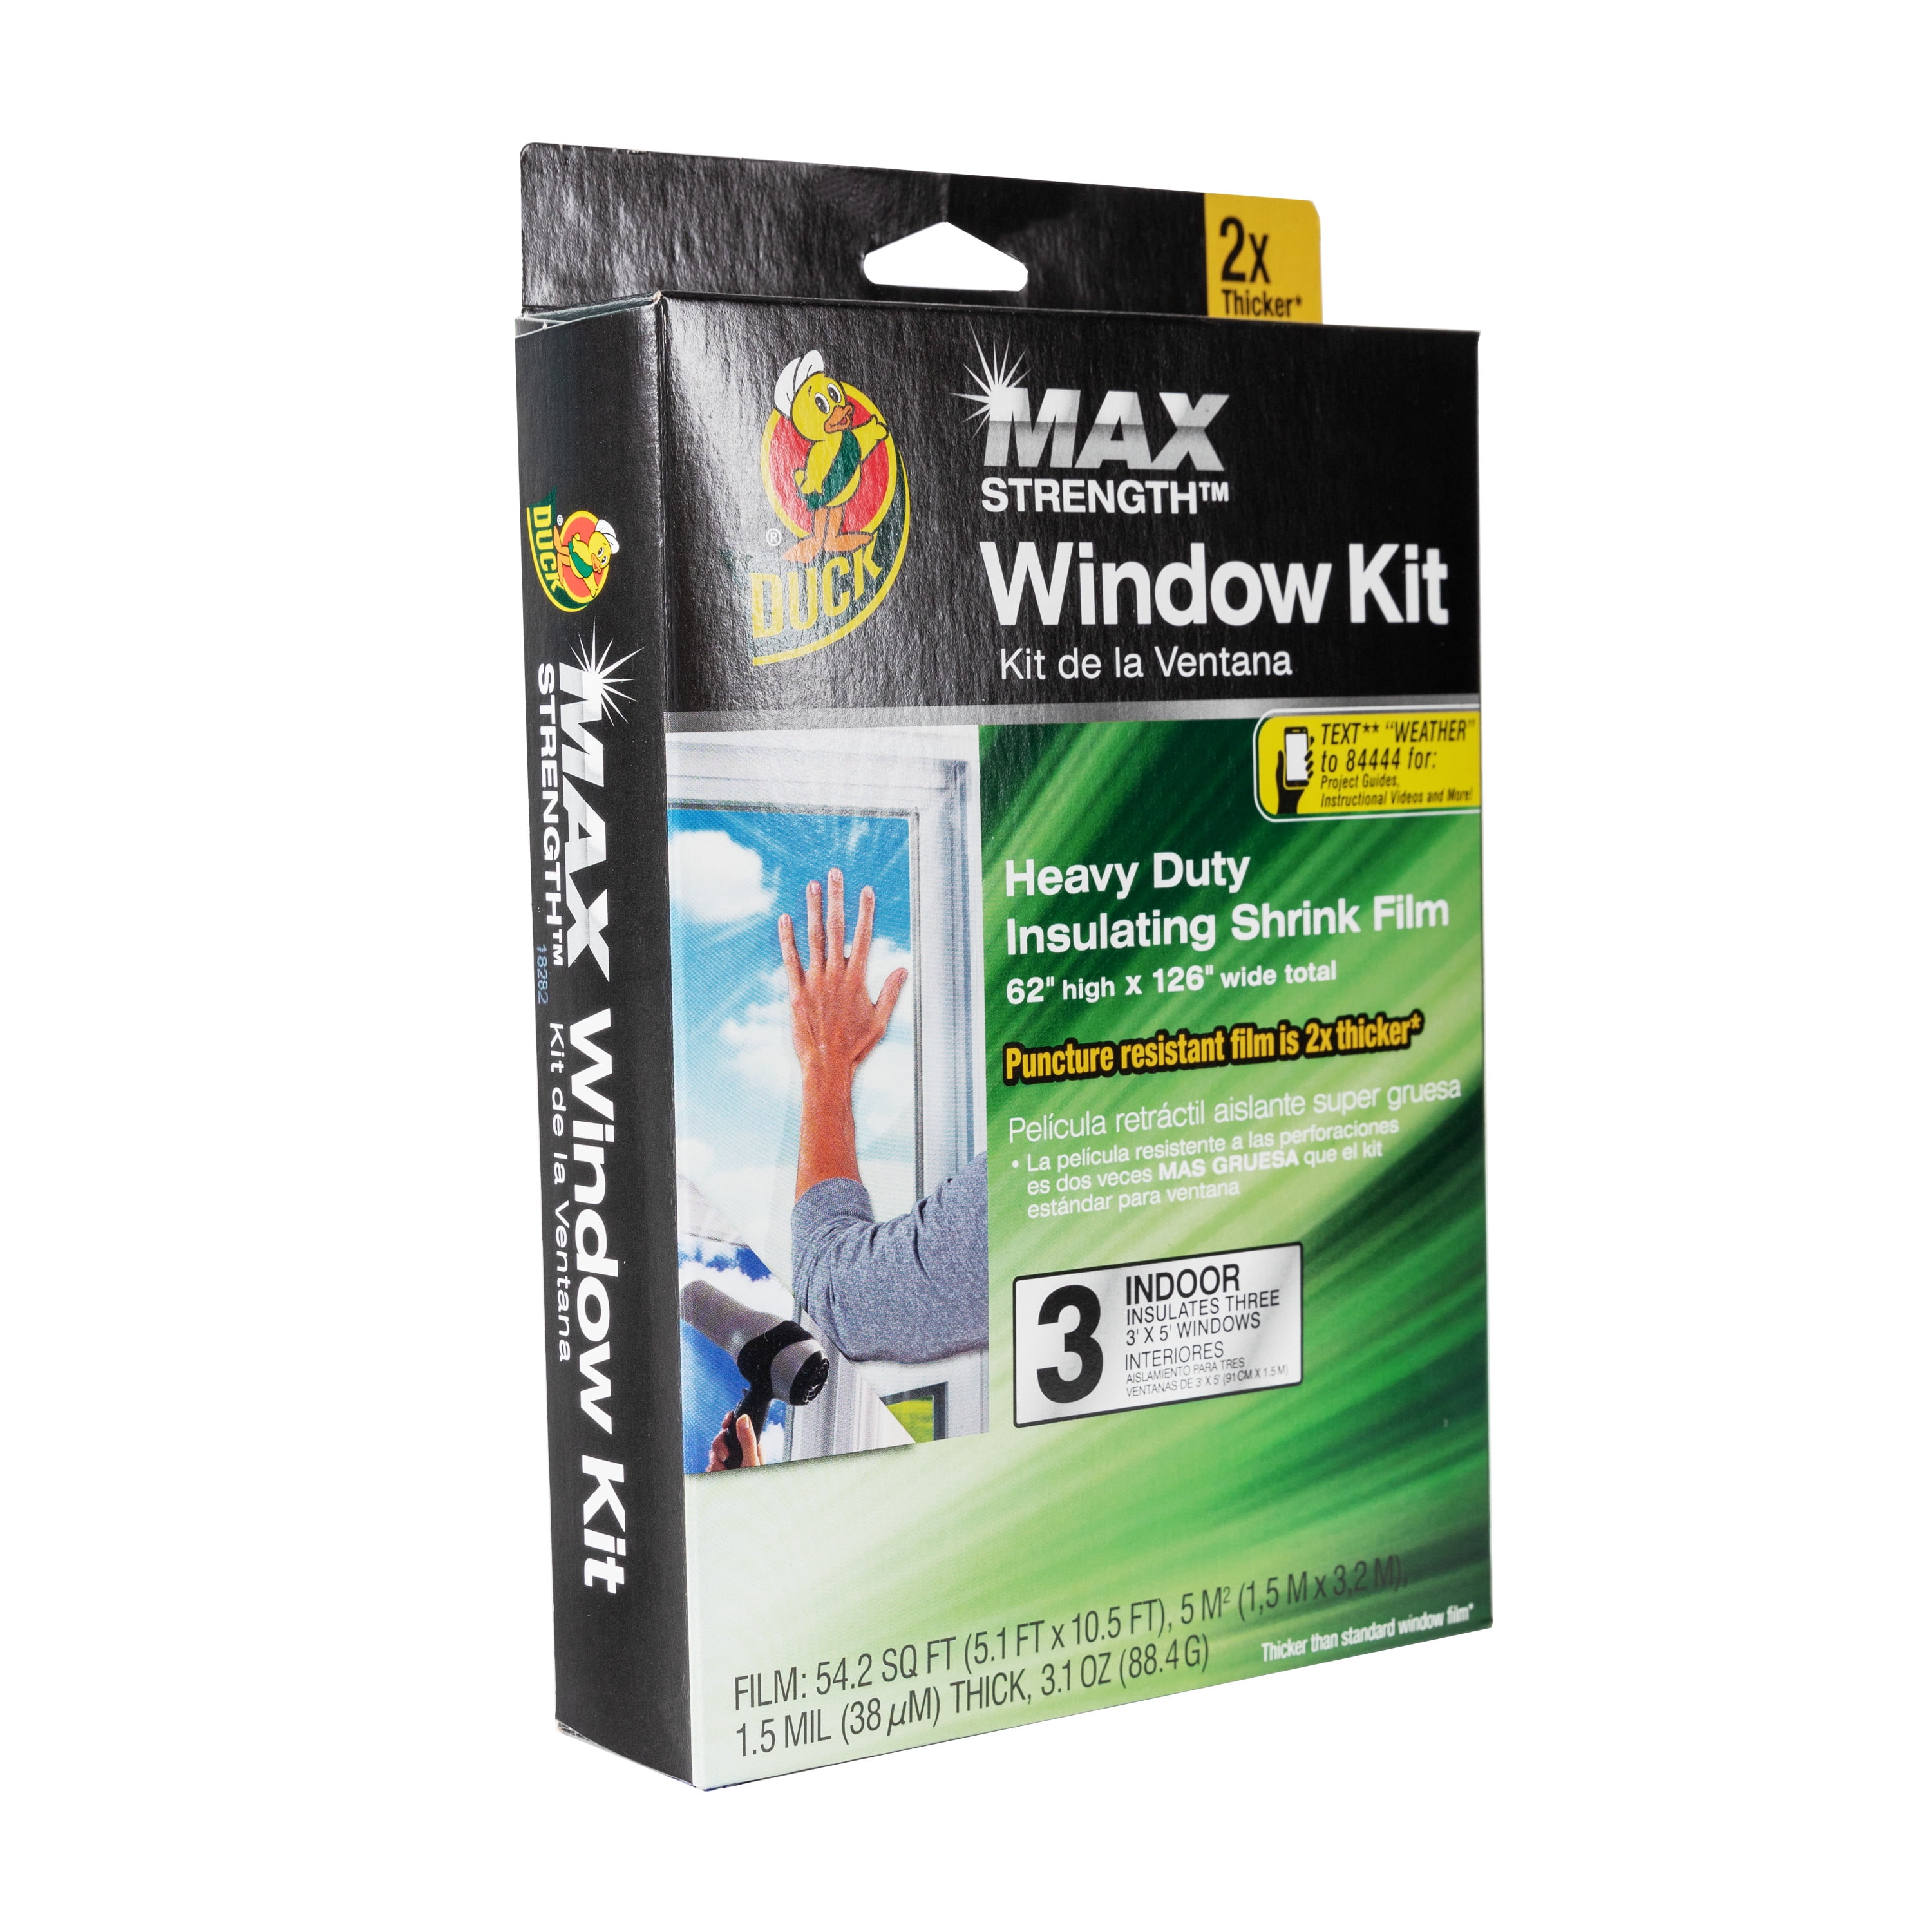 Duck Max Strength Heavy Duty Window Kit Indoor 62"x126" wide total 